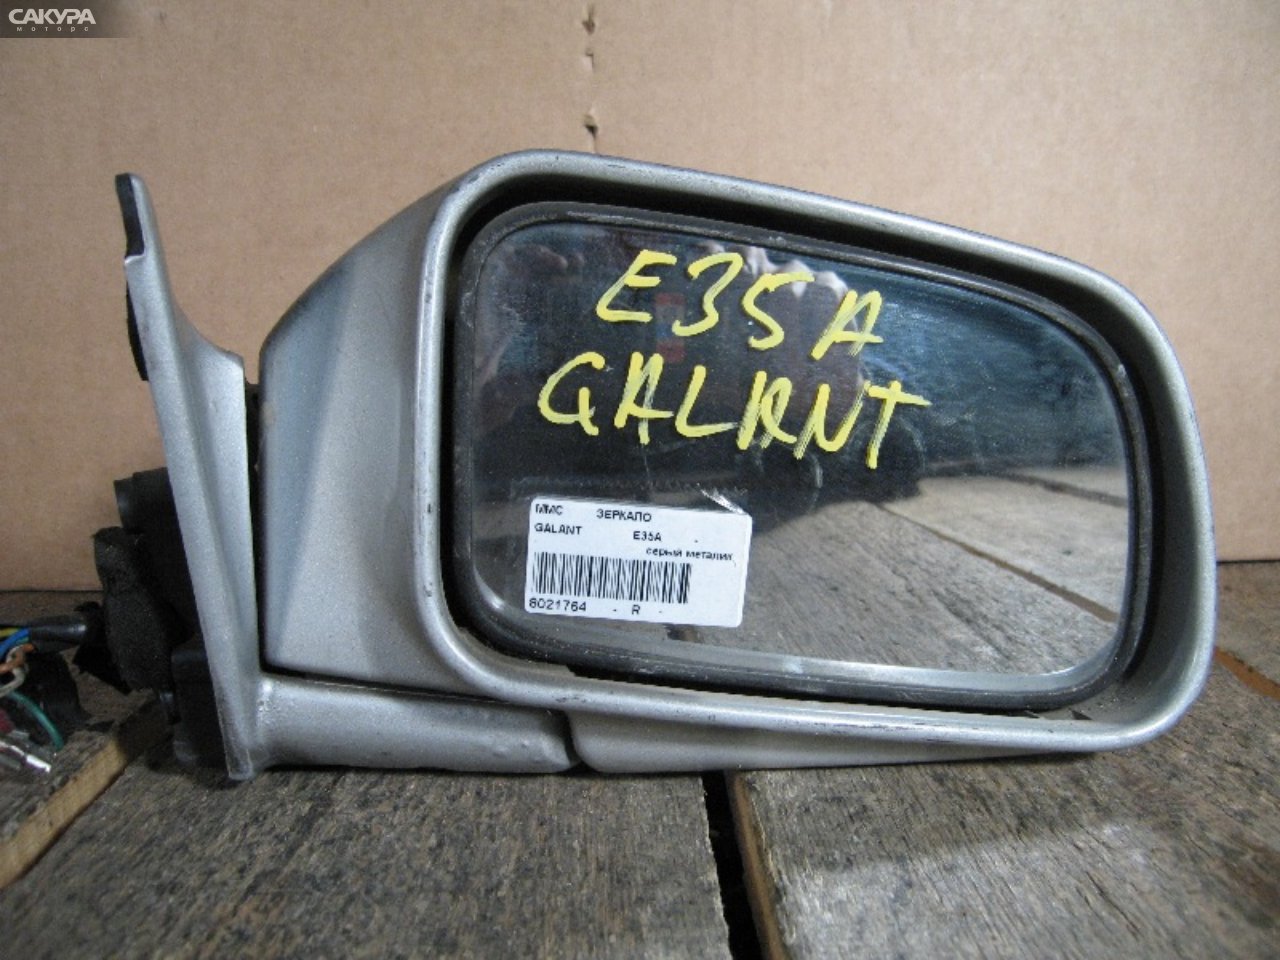 Зеркало боковое правое Mitsubishi Galant E35A: купить в Сакура Абакан.